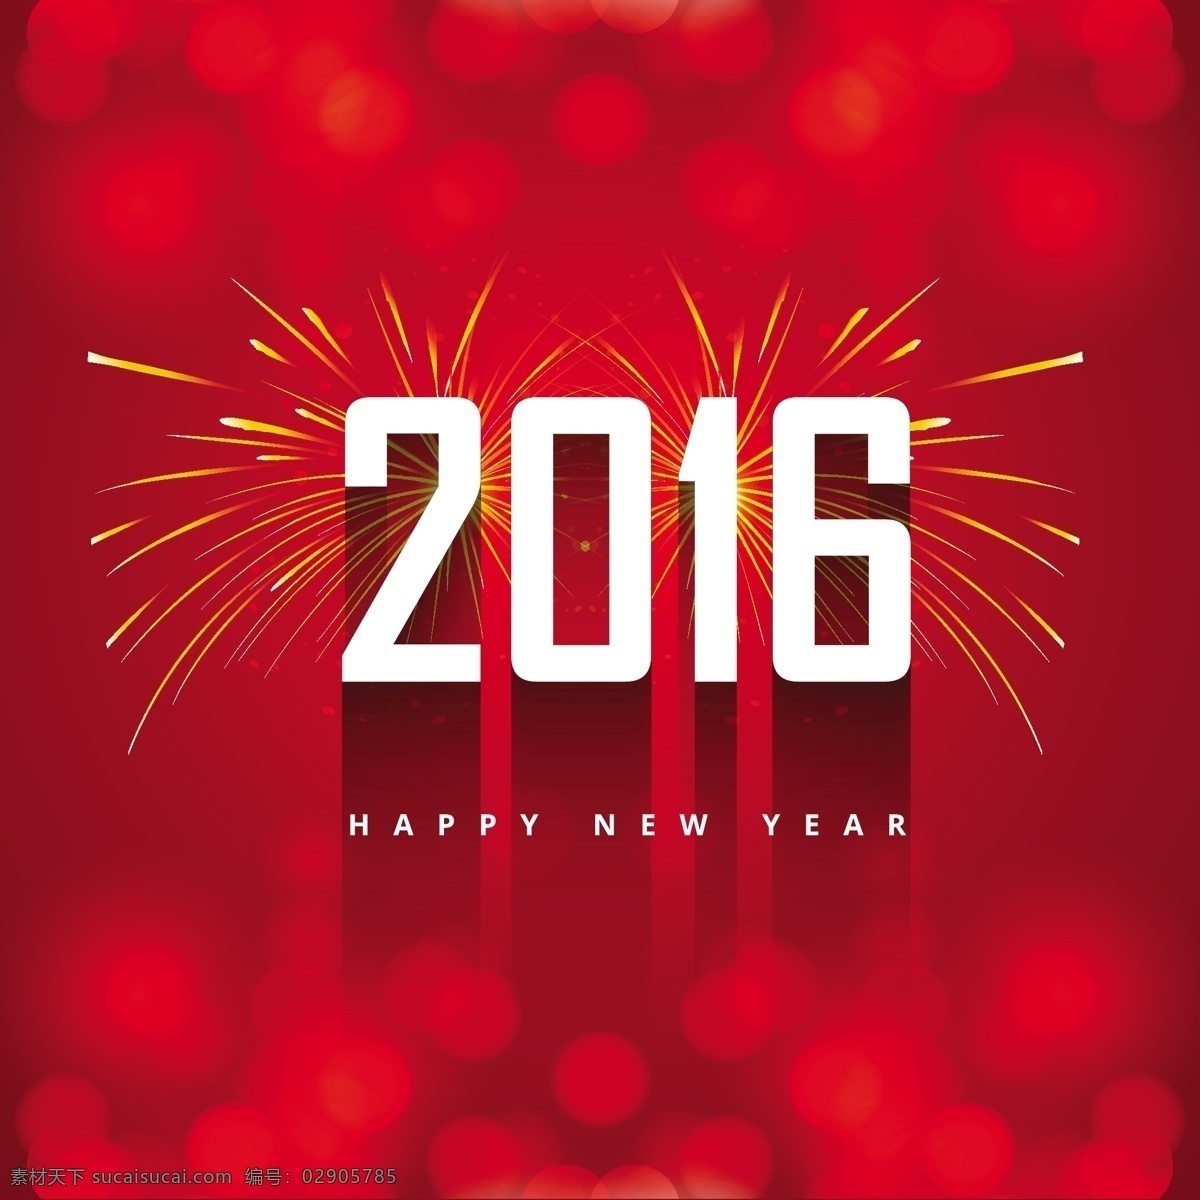 新年 2016 问候 烟火 背景 抽象 卡 新的一年 新年快乐 快乐 红 烟花 壁纸 红色背景 庆典 新的活动 丰富多彩 背景虚化 色彩的背景下 今年的烟花